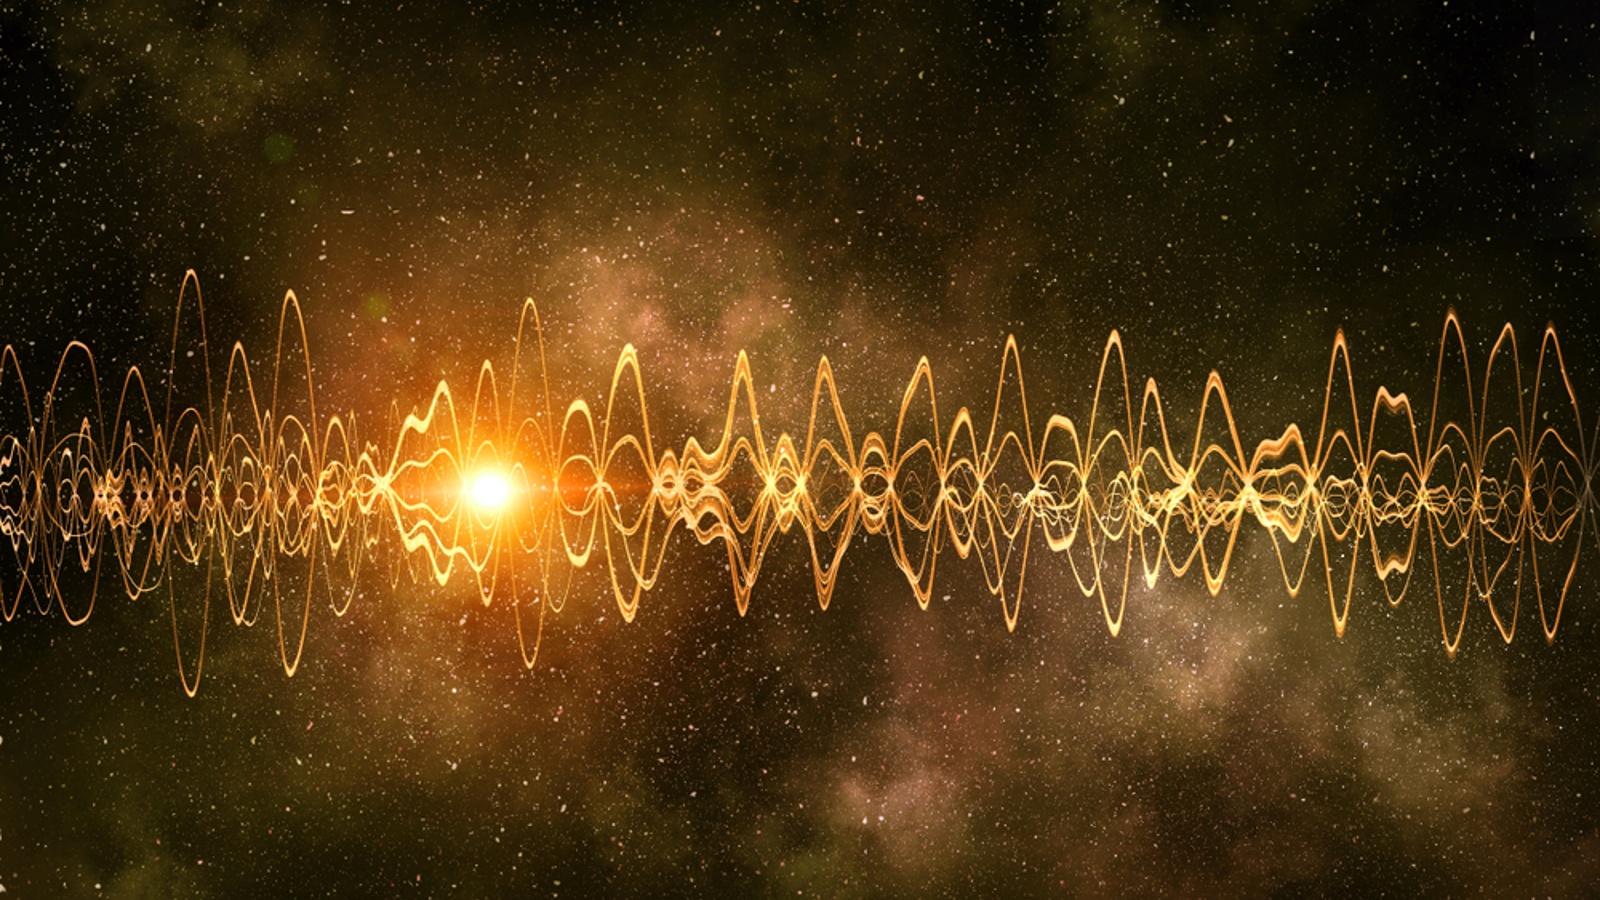 Gelombang suara dihamparkan pada gambar luar angkasa